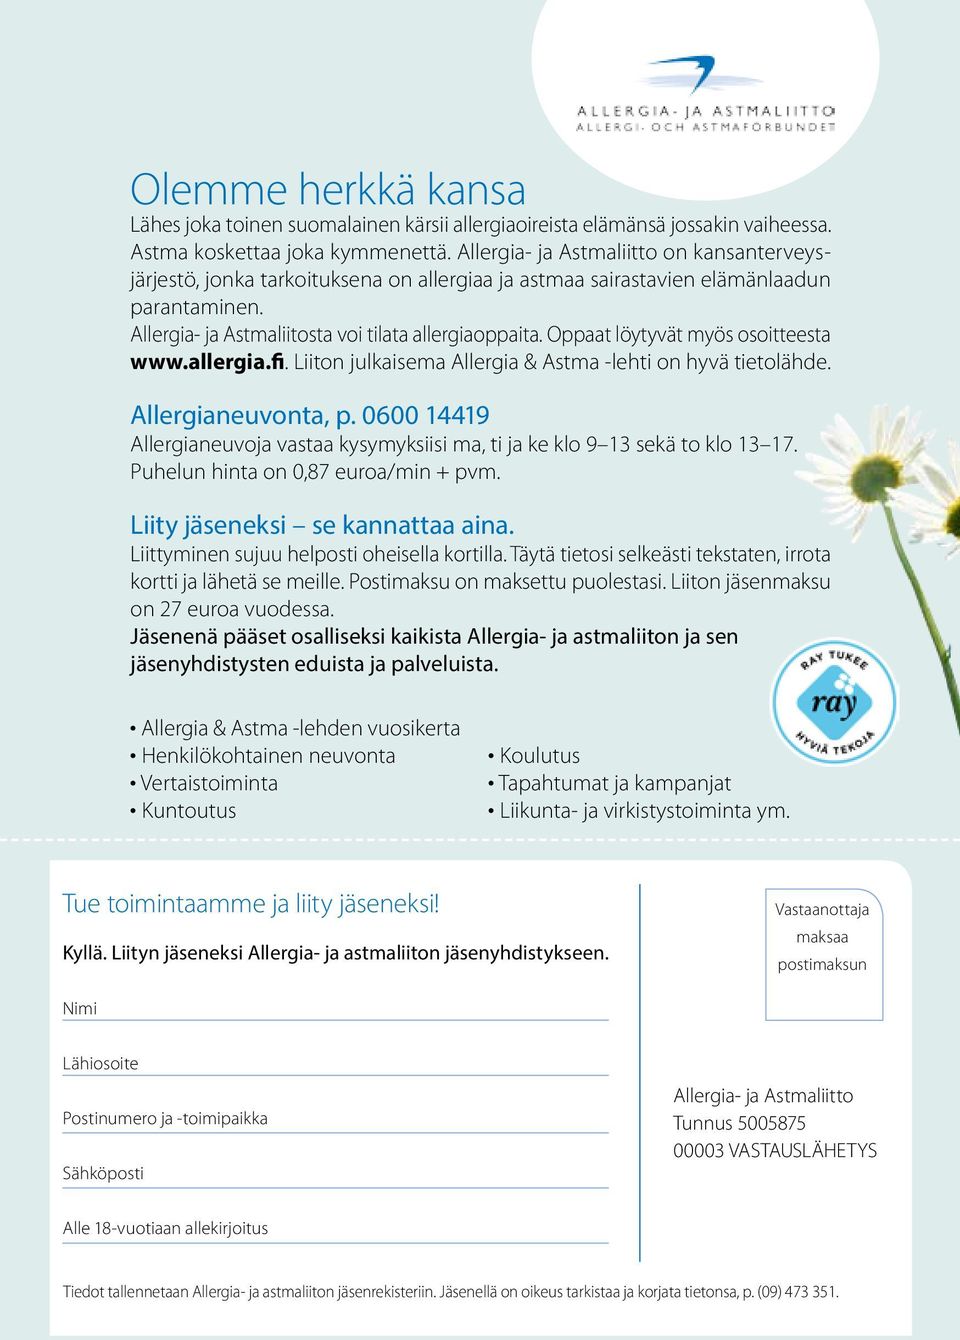 Oppaat löytyvät myös osoitteesta www.allergia.fi. Liiton julkaisema Allergia & Astma -lehti on hyvä tietolähde. Allergianeuvonta, p.